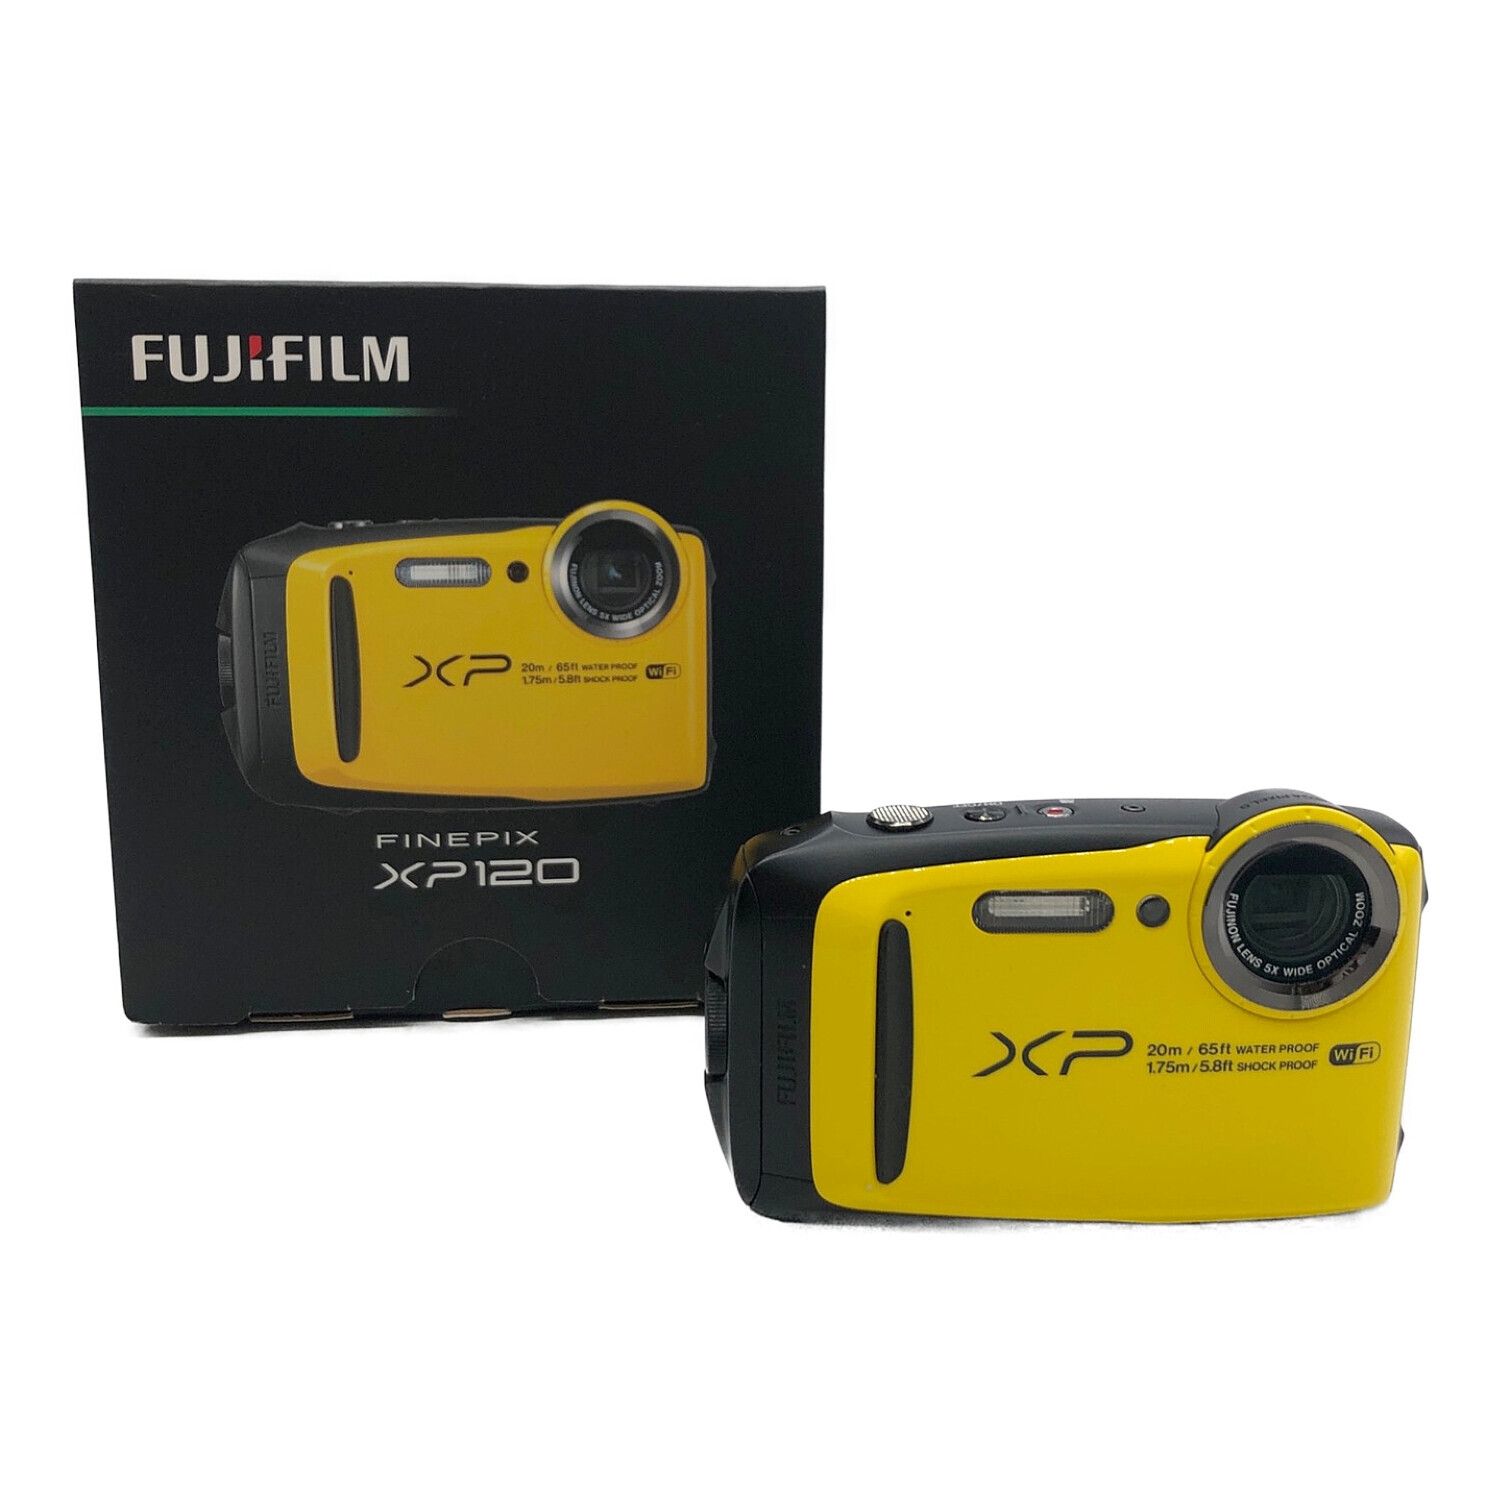 ネット通販サイト 富士フイルム 防水デジカメ FinePix XP120 - カメラ